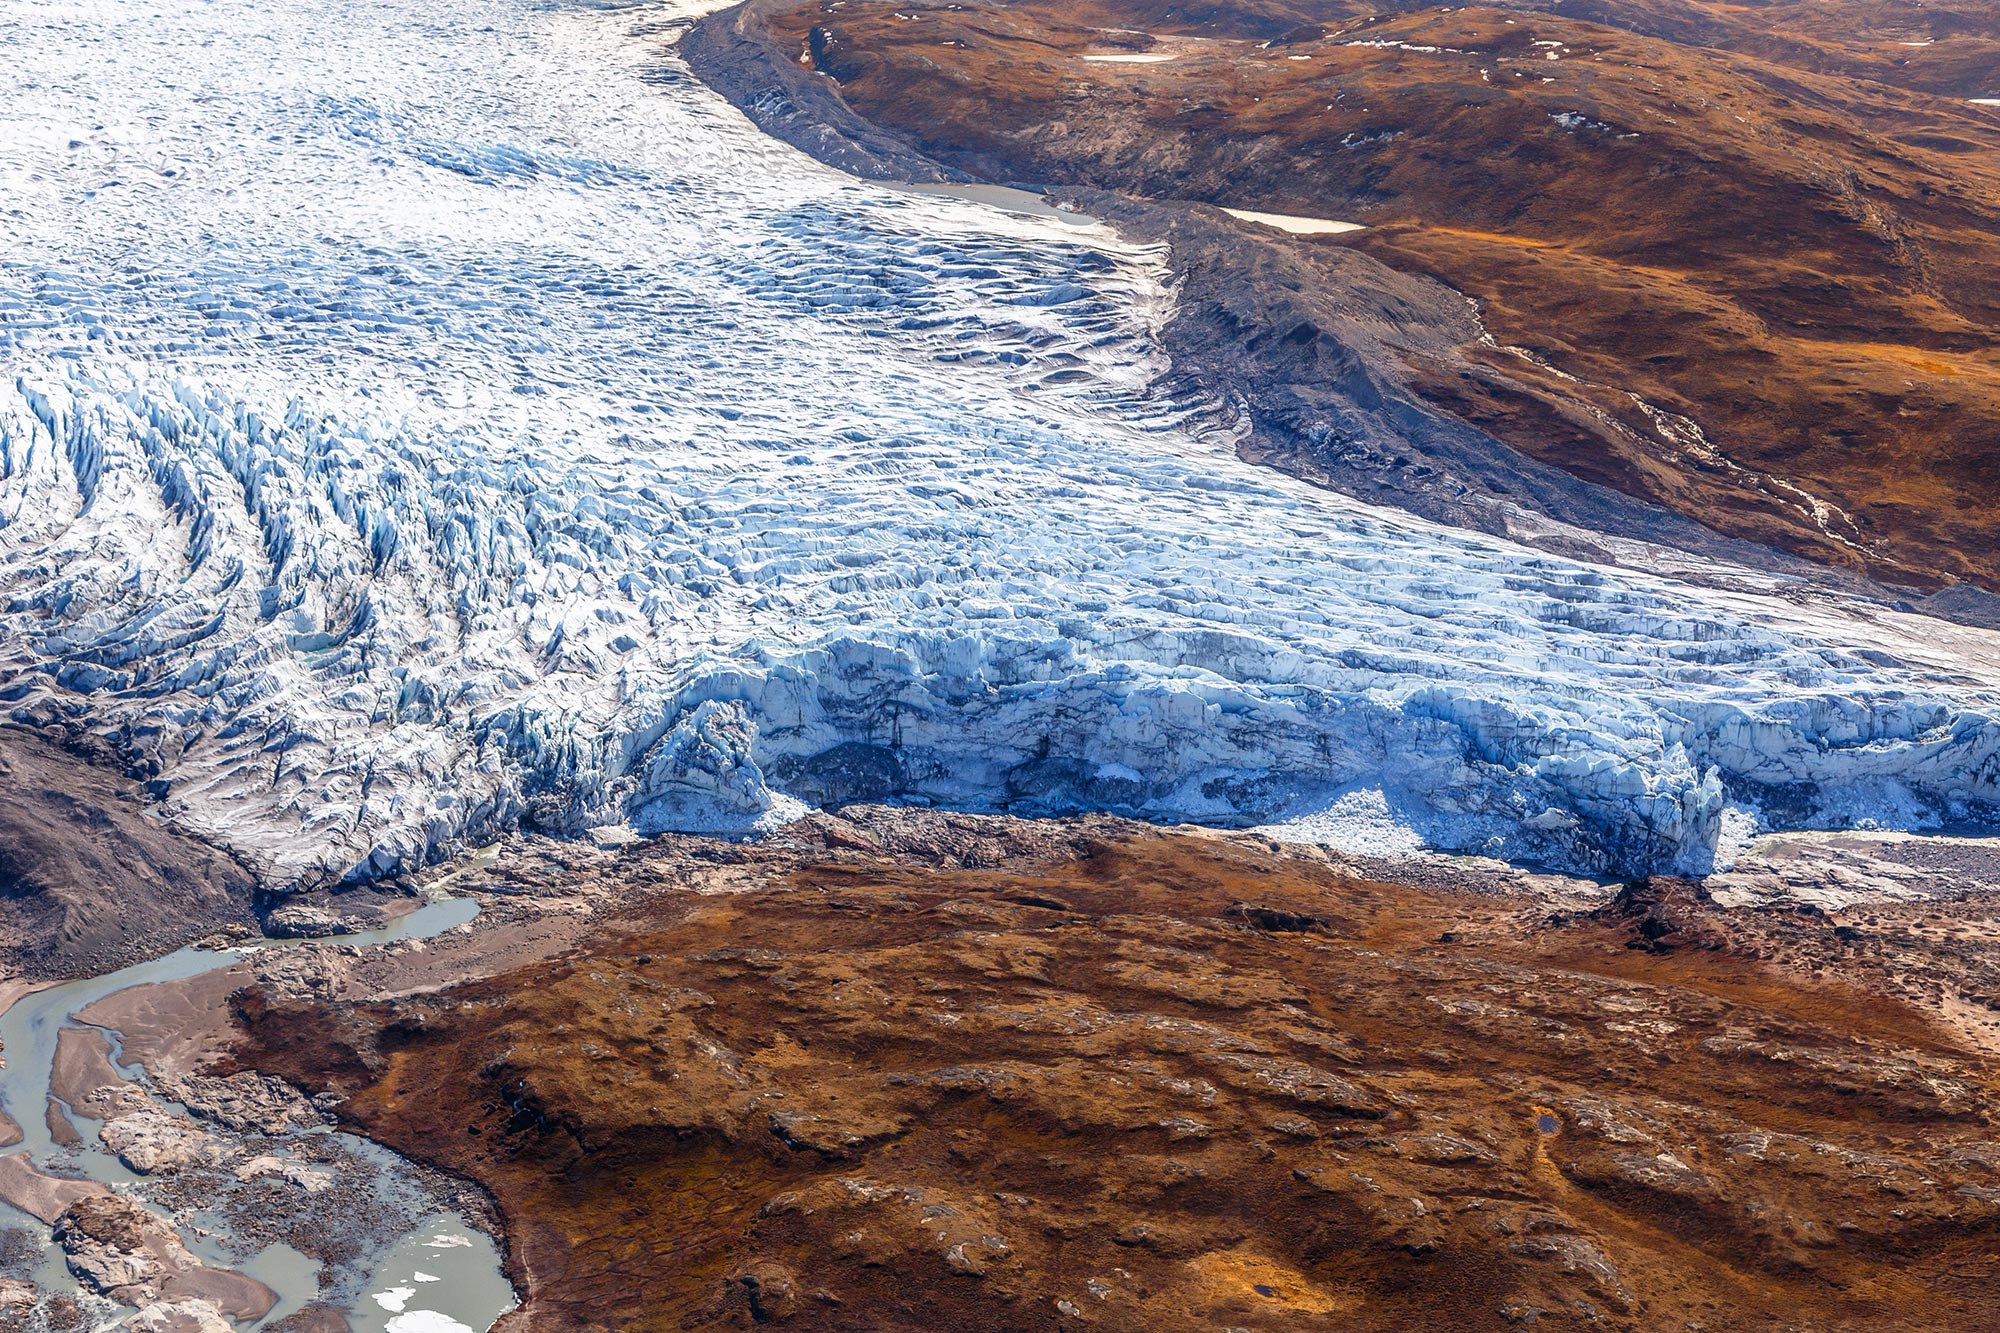 Τι κρύβεται κάτω από το λιώσιμο των παγετώνων και την απόψυξη του μόνιμου παγετού;  Πολύτιμα μέταλλα, ορυκτά καύσιμα και θανατηφόρα μικρόβια